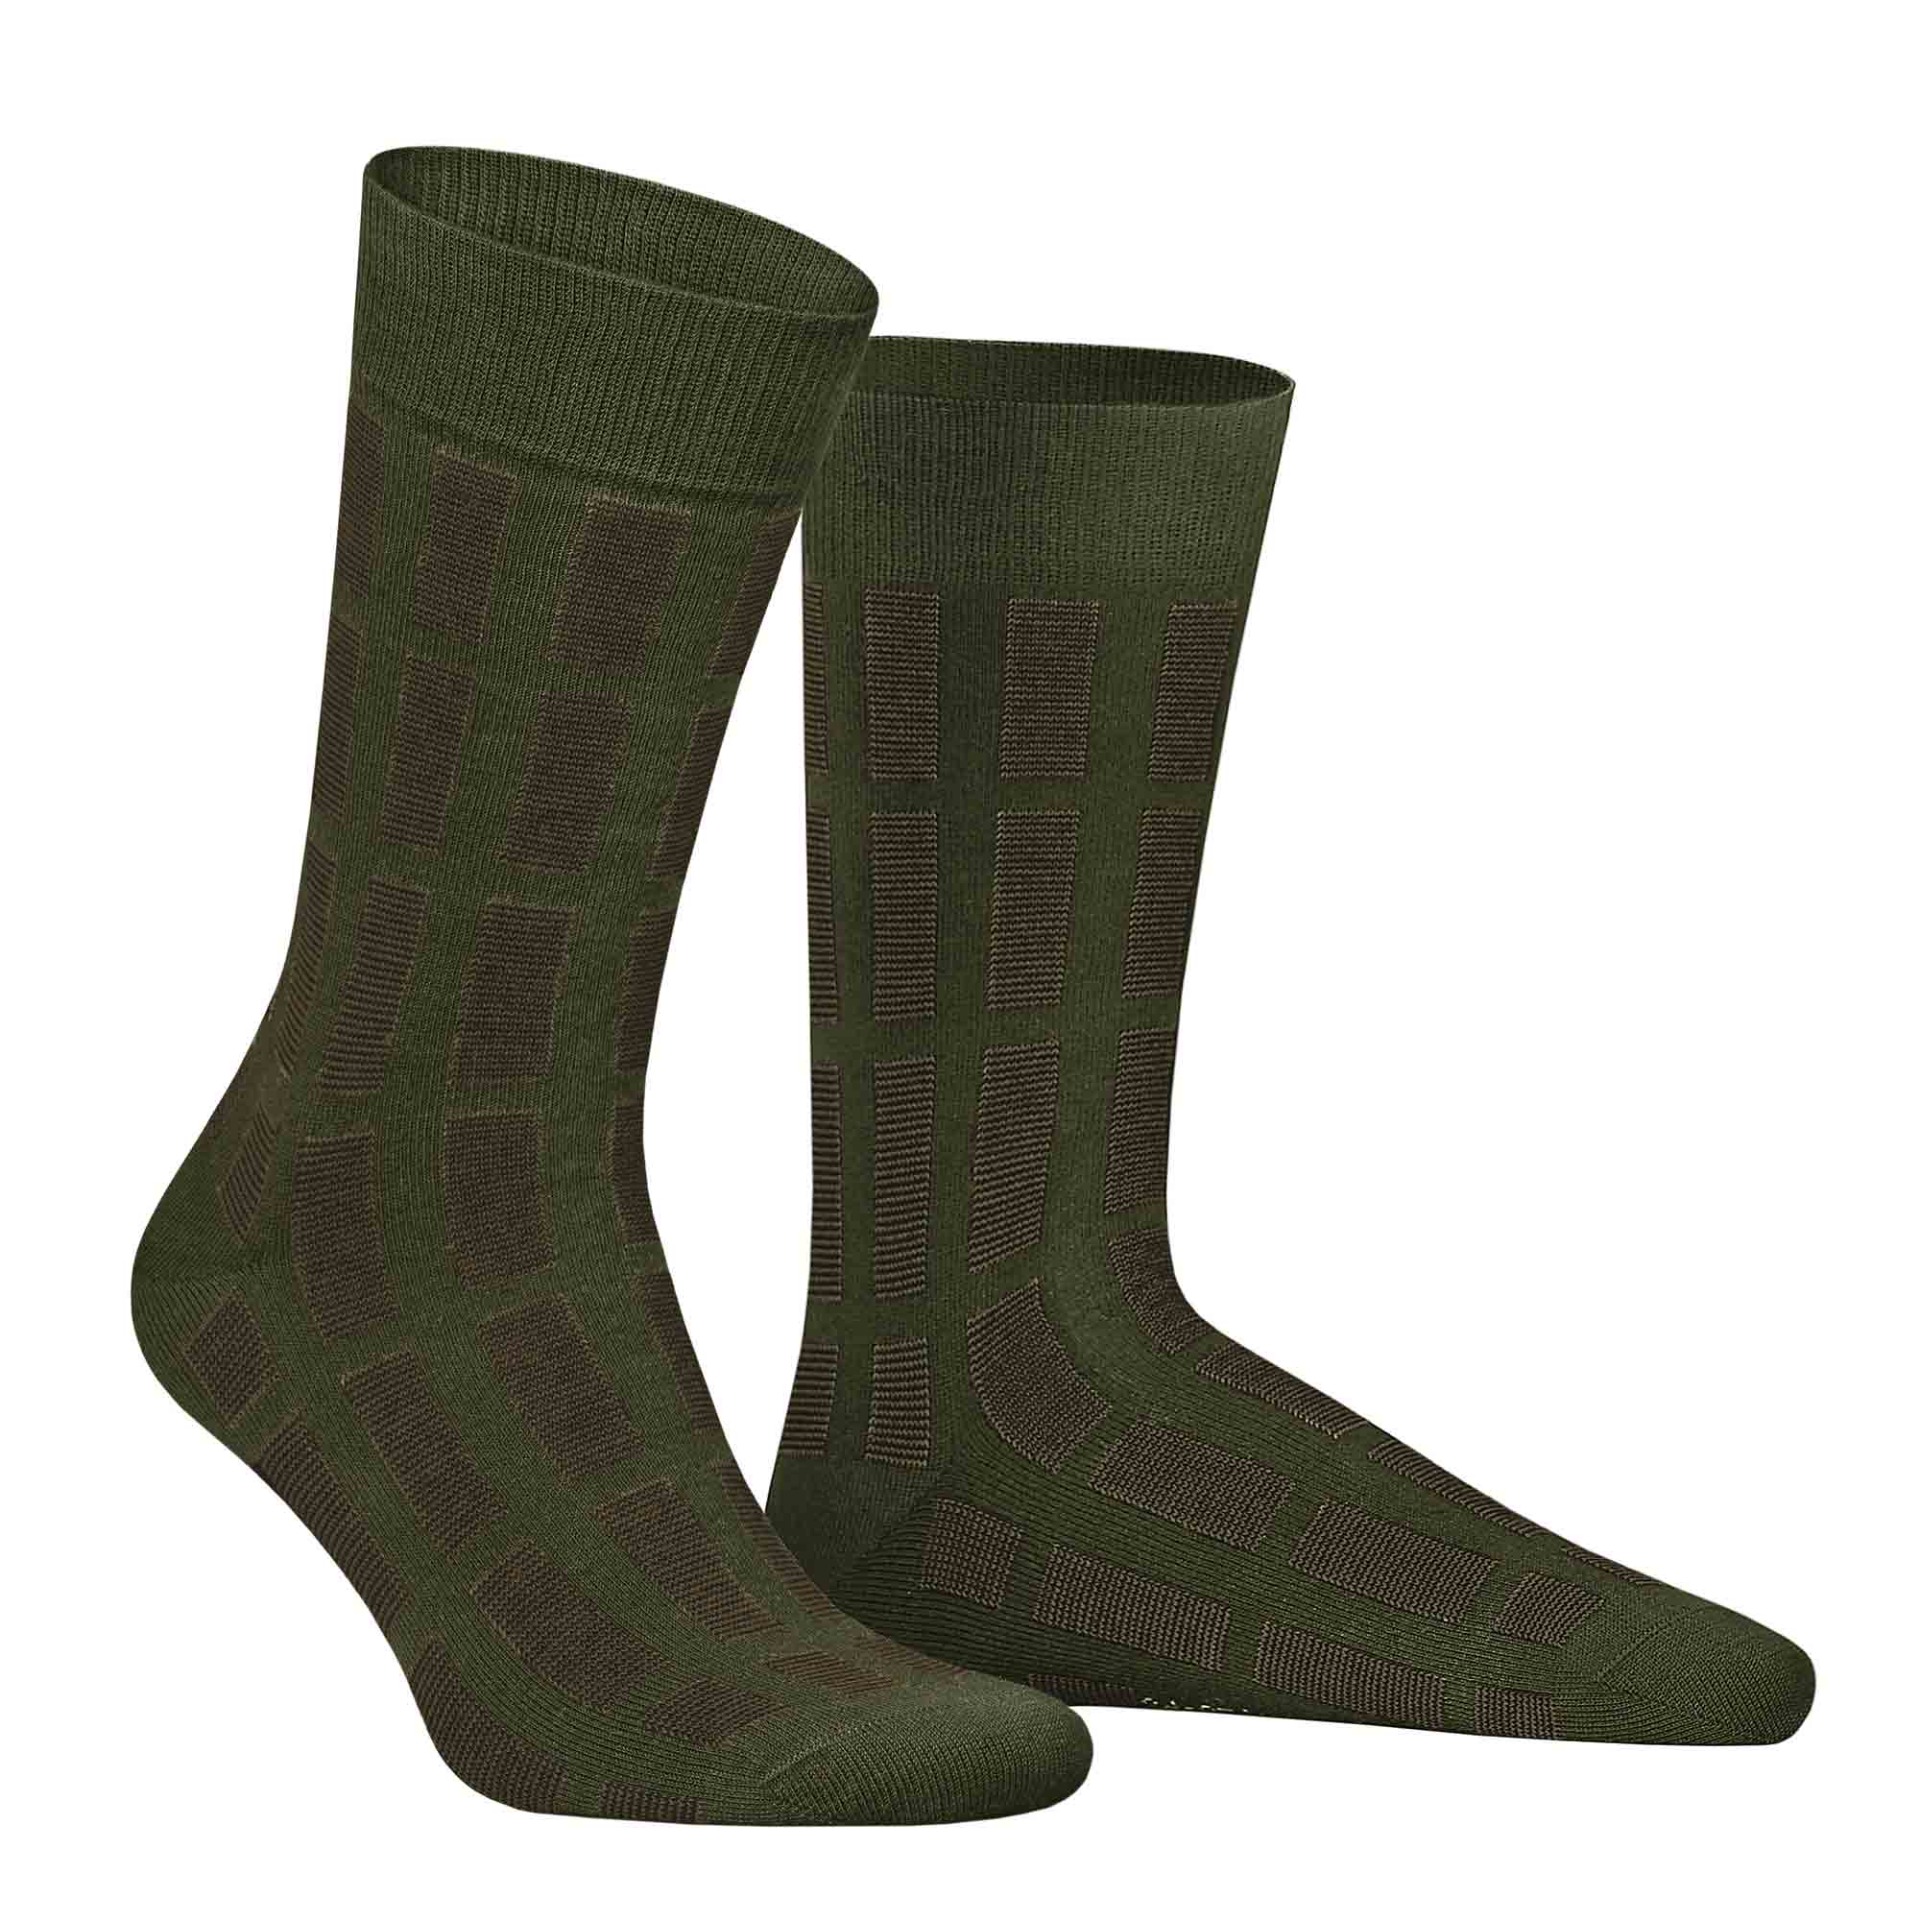 HUDSON Herren PIN -  39/42 - Socken mit Streifen-Muster - Army green 0112 (Grün)